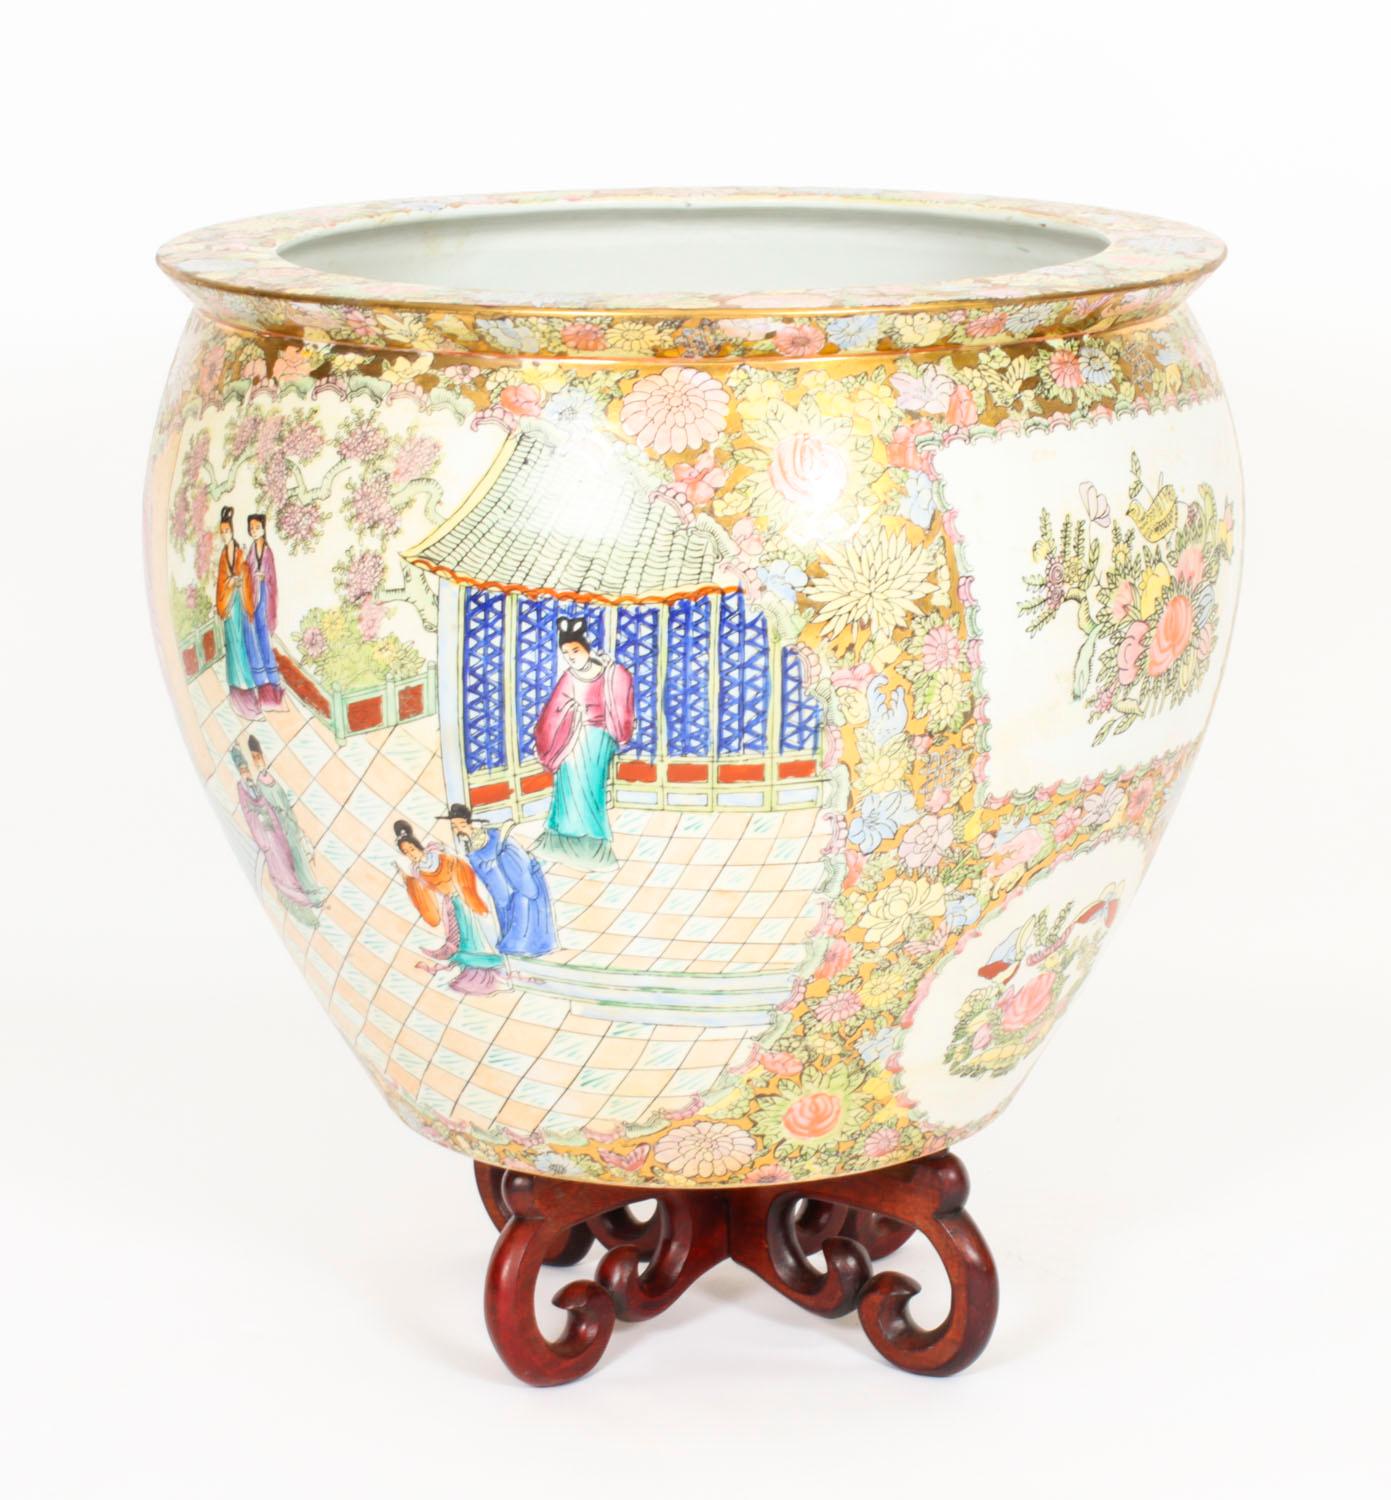 Une belle paire d'énormes vases / bols à poissons en porcelaine peints à la main sur pied  à la manière de la famille rose cantonale de la dynastie chinoise Qing, datant du milieu du 20e siècle.

Les vases comportent des panneaux représentant des